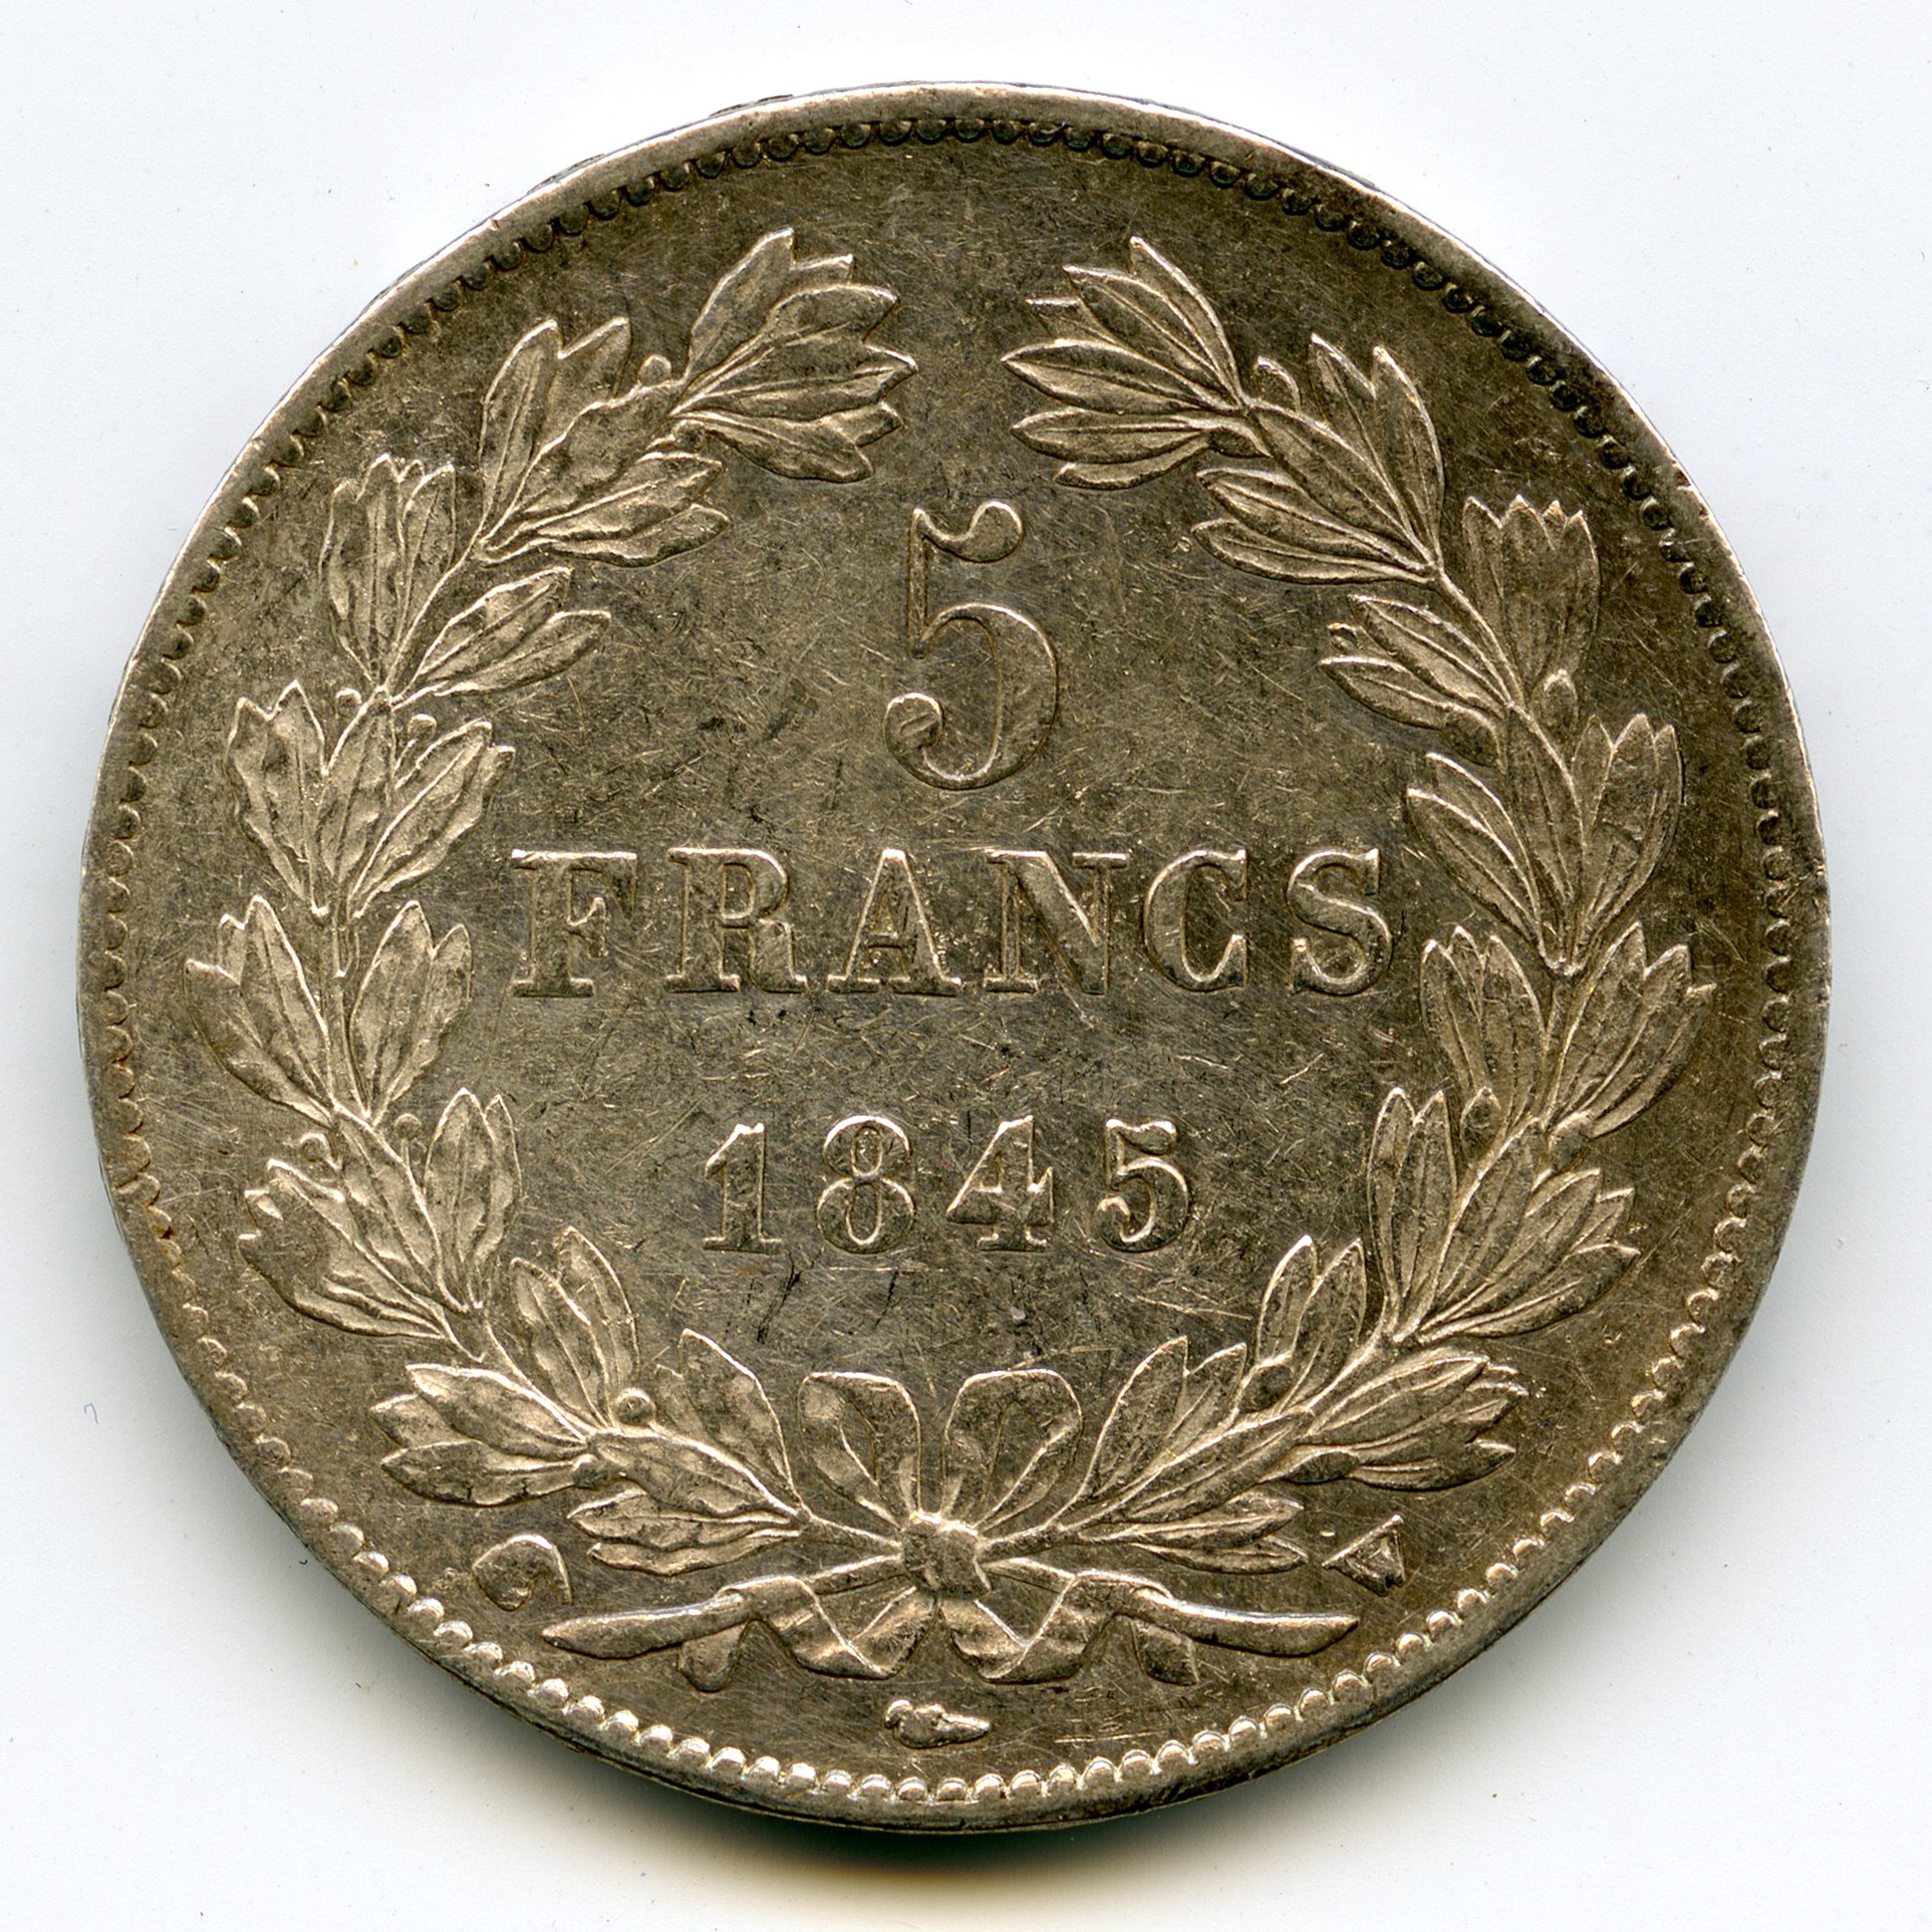 Loius-Philippe I - 5 Francs - 1845 W revers